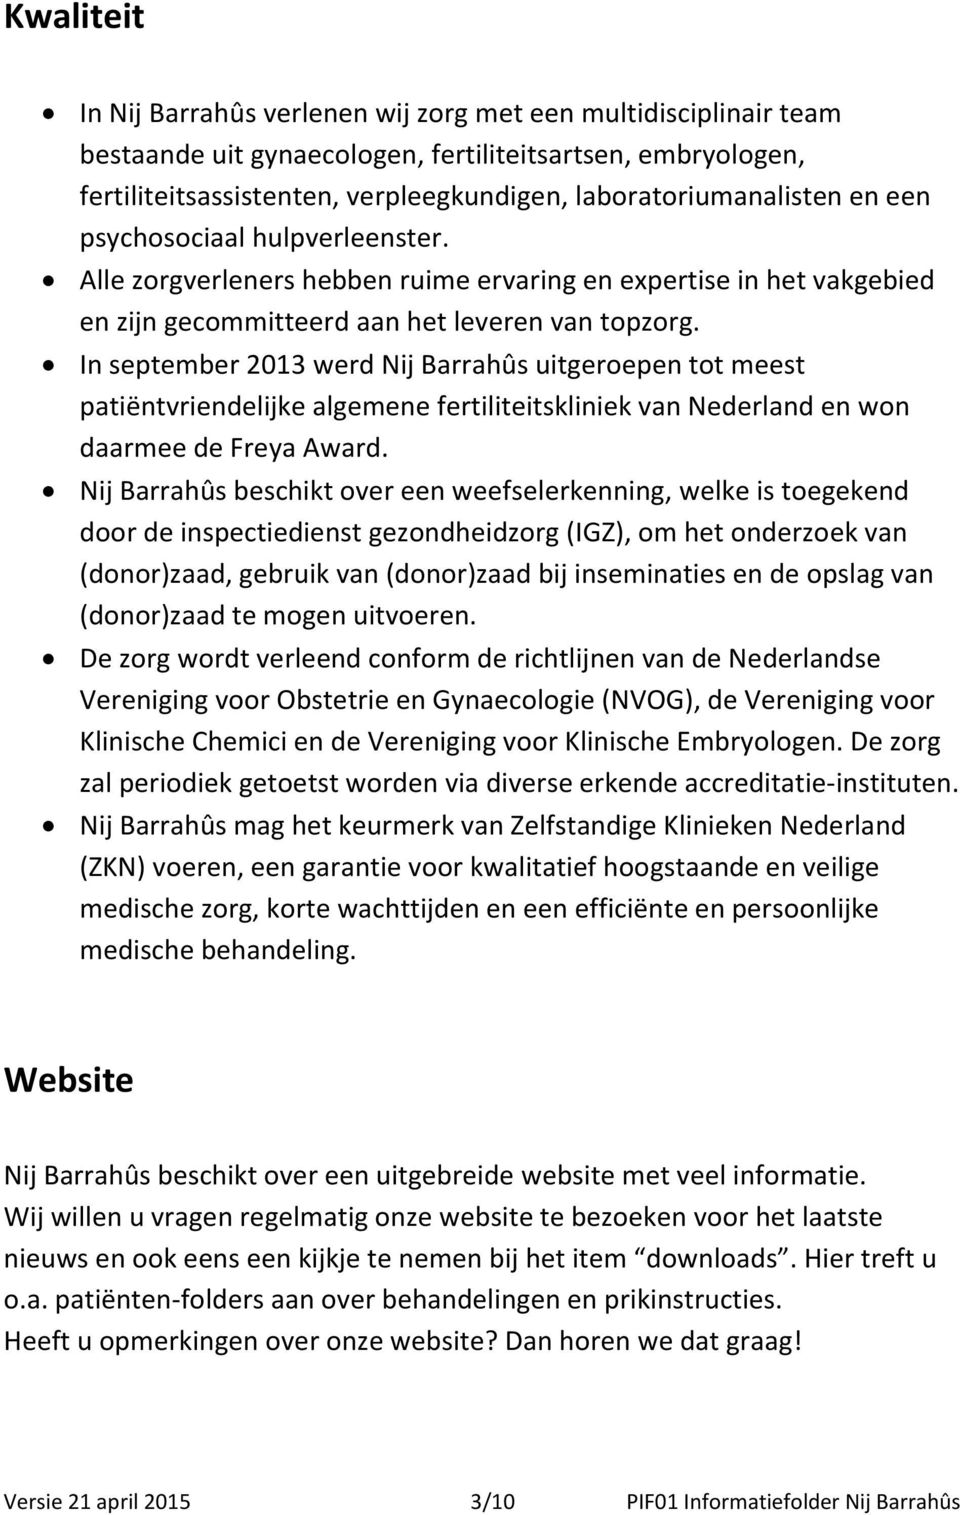 In september 2013 werd Nij Barrahûs uitgeroepen tot meest patiëntvriendelijke algemene fertiliteitskliniek van Nederland en won daarmee de Freya Award.